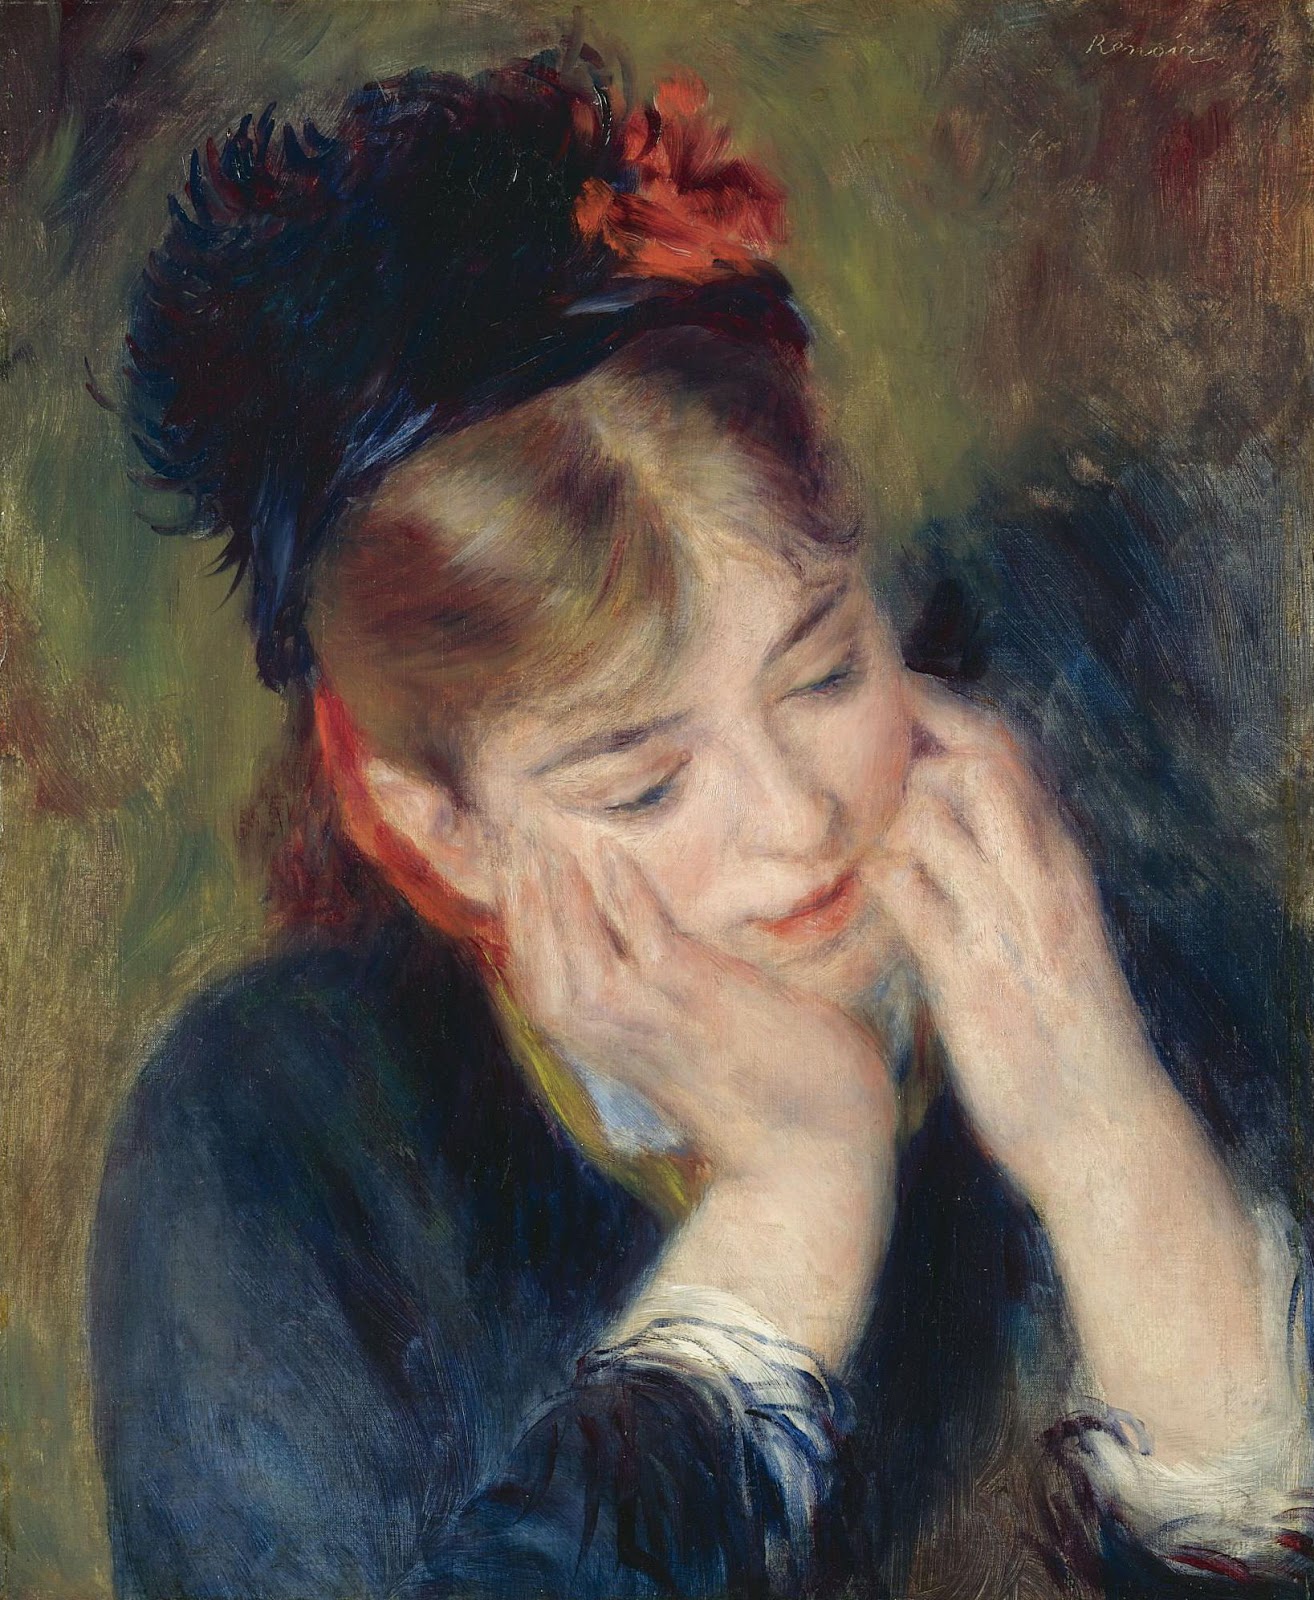 Pierre+Auguste+Renoir-1841-1-19 (864).jpg